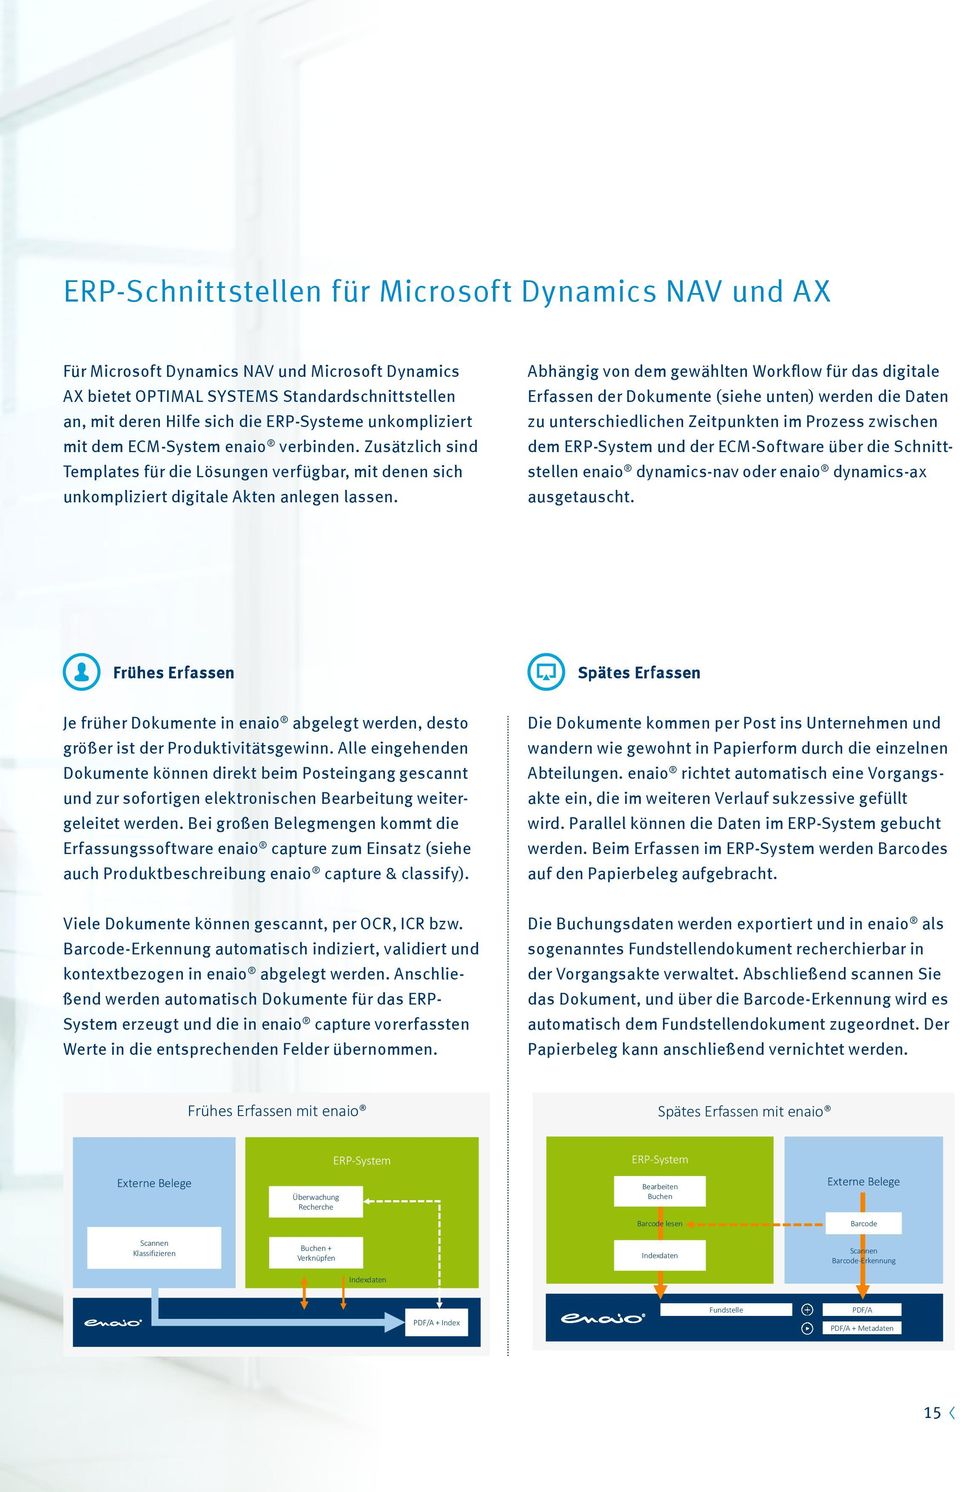 Abhängig von dem gewählten Workflow für das digitale Erfassen der Dokumente (siehe unten) werden die Daten zu unterschiedlichen Zeitpunkten im Prozess zwischen dem ERP-System und der ECM-Software